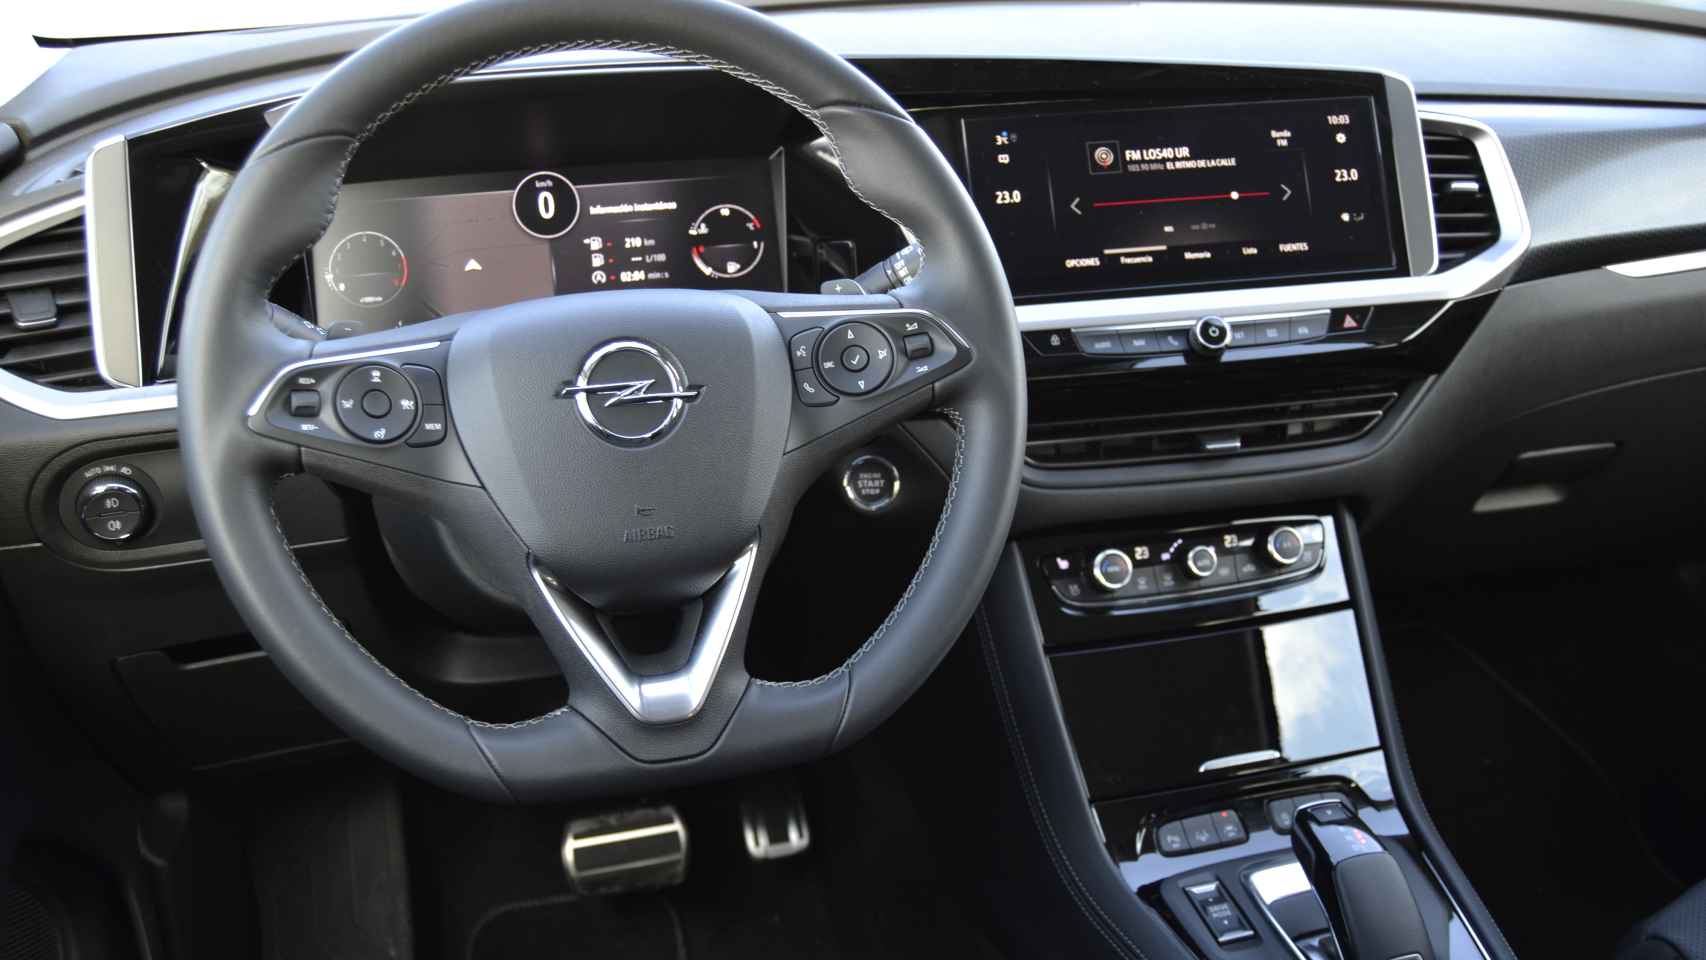 Cuenta con el Opel Pure Panel, un panel que integra tanto el sistema multimedia como el cuadro de instrumentos.